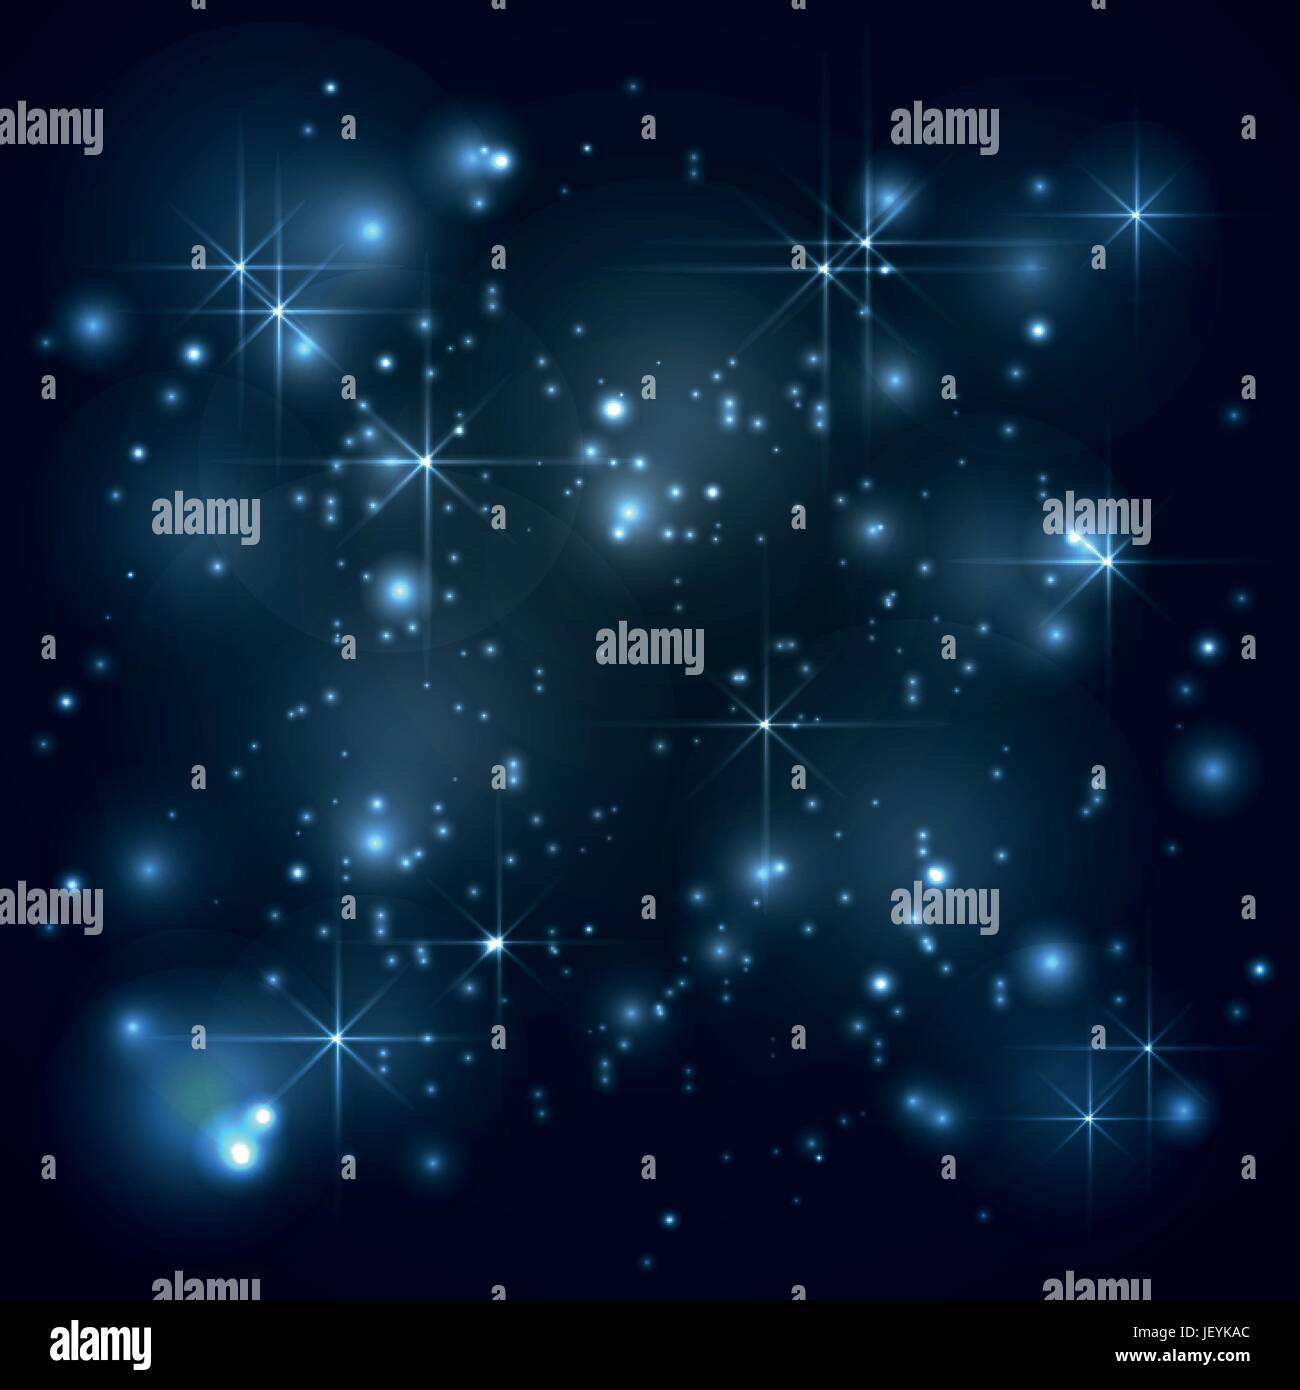 Universum, Galaxie mit Sternen im blauen Hintergrund, abstrakt Vektor Stock Vektor